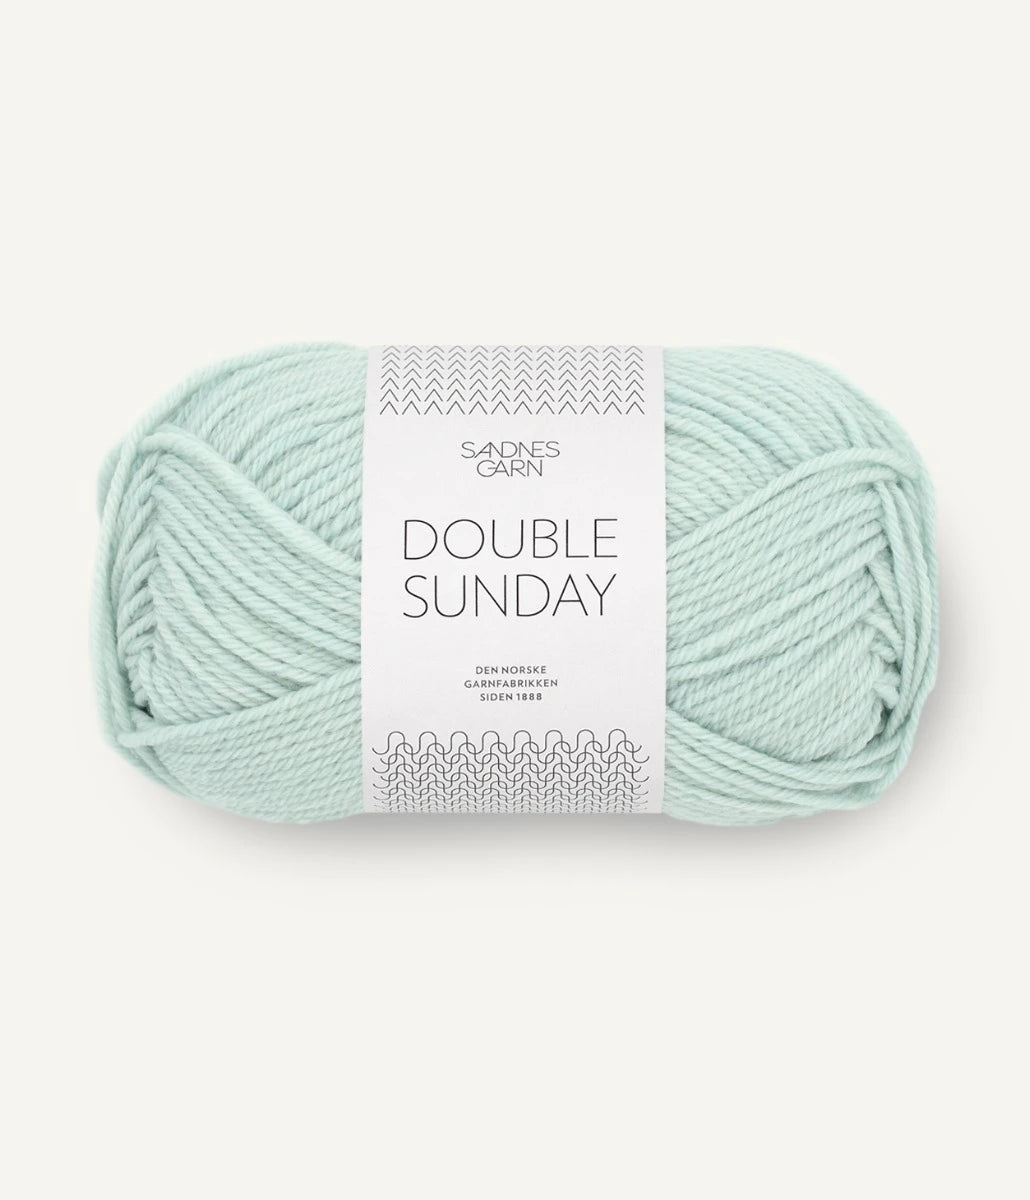 Kuvassa on Sandnes Garn Double Sunday -lanka (yarn) värissä Blå Dis.